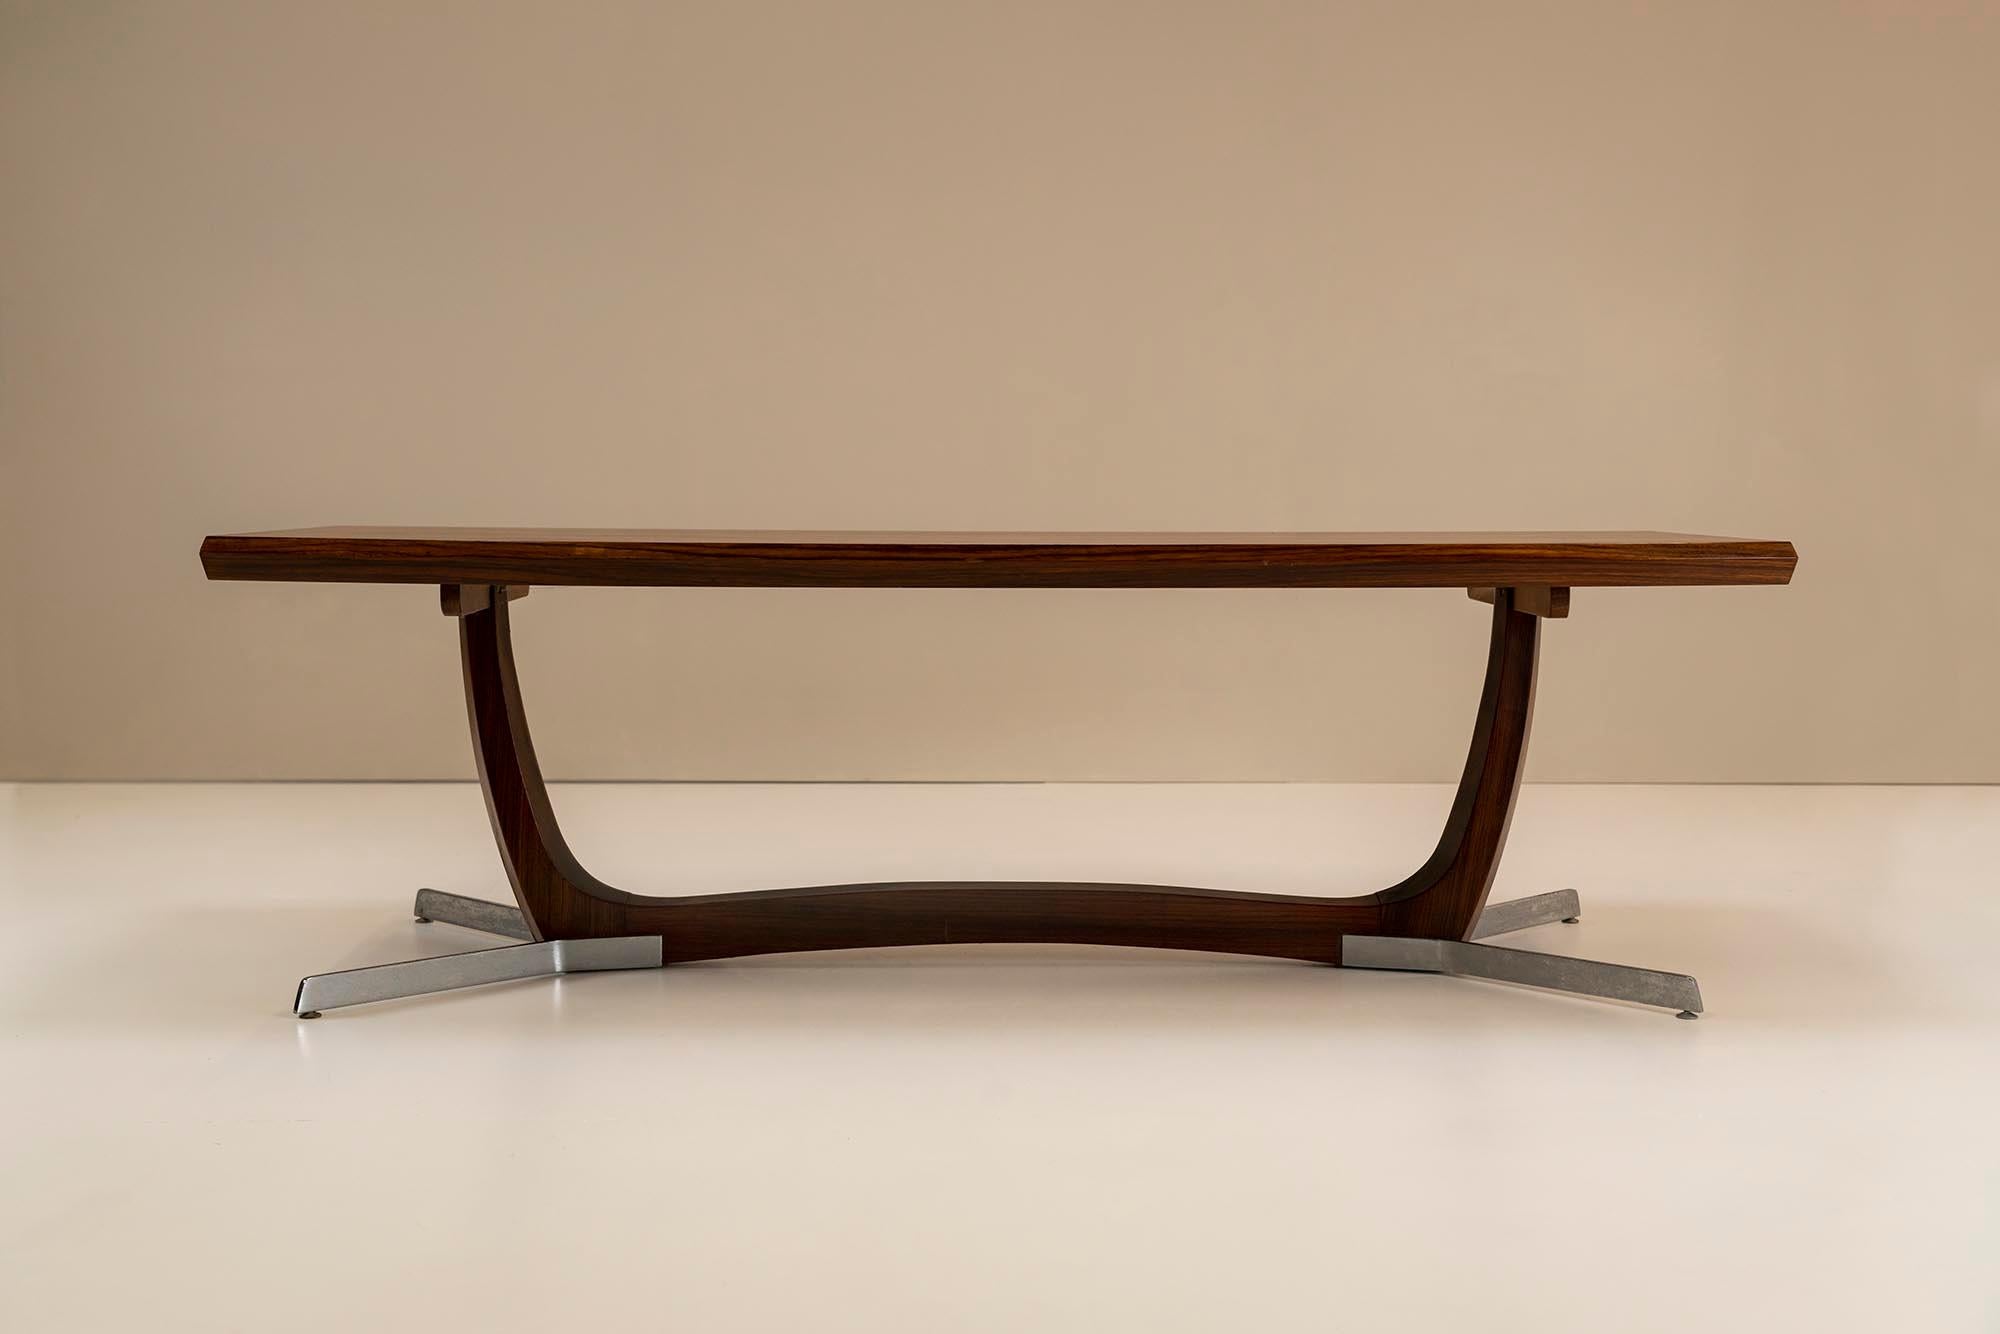 Grande table basse architecturale avec une base de forme organique en placage de bois de rose et métal des années 1960. Une vue très impressionnante lorsque vous entrez dans une pièce et que vous posez les yeux sur cette table basse architecturale.